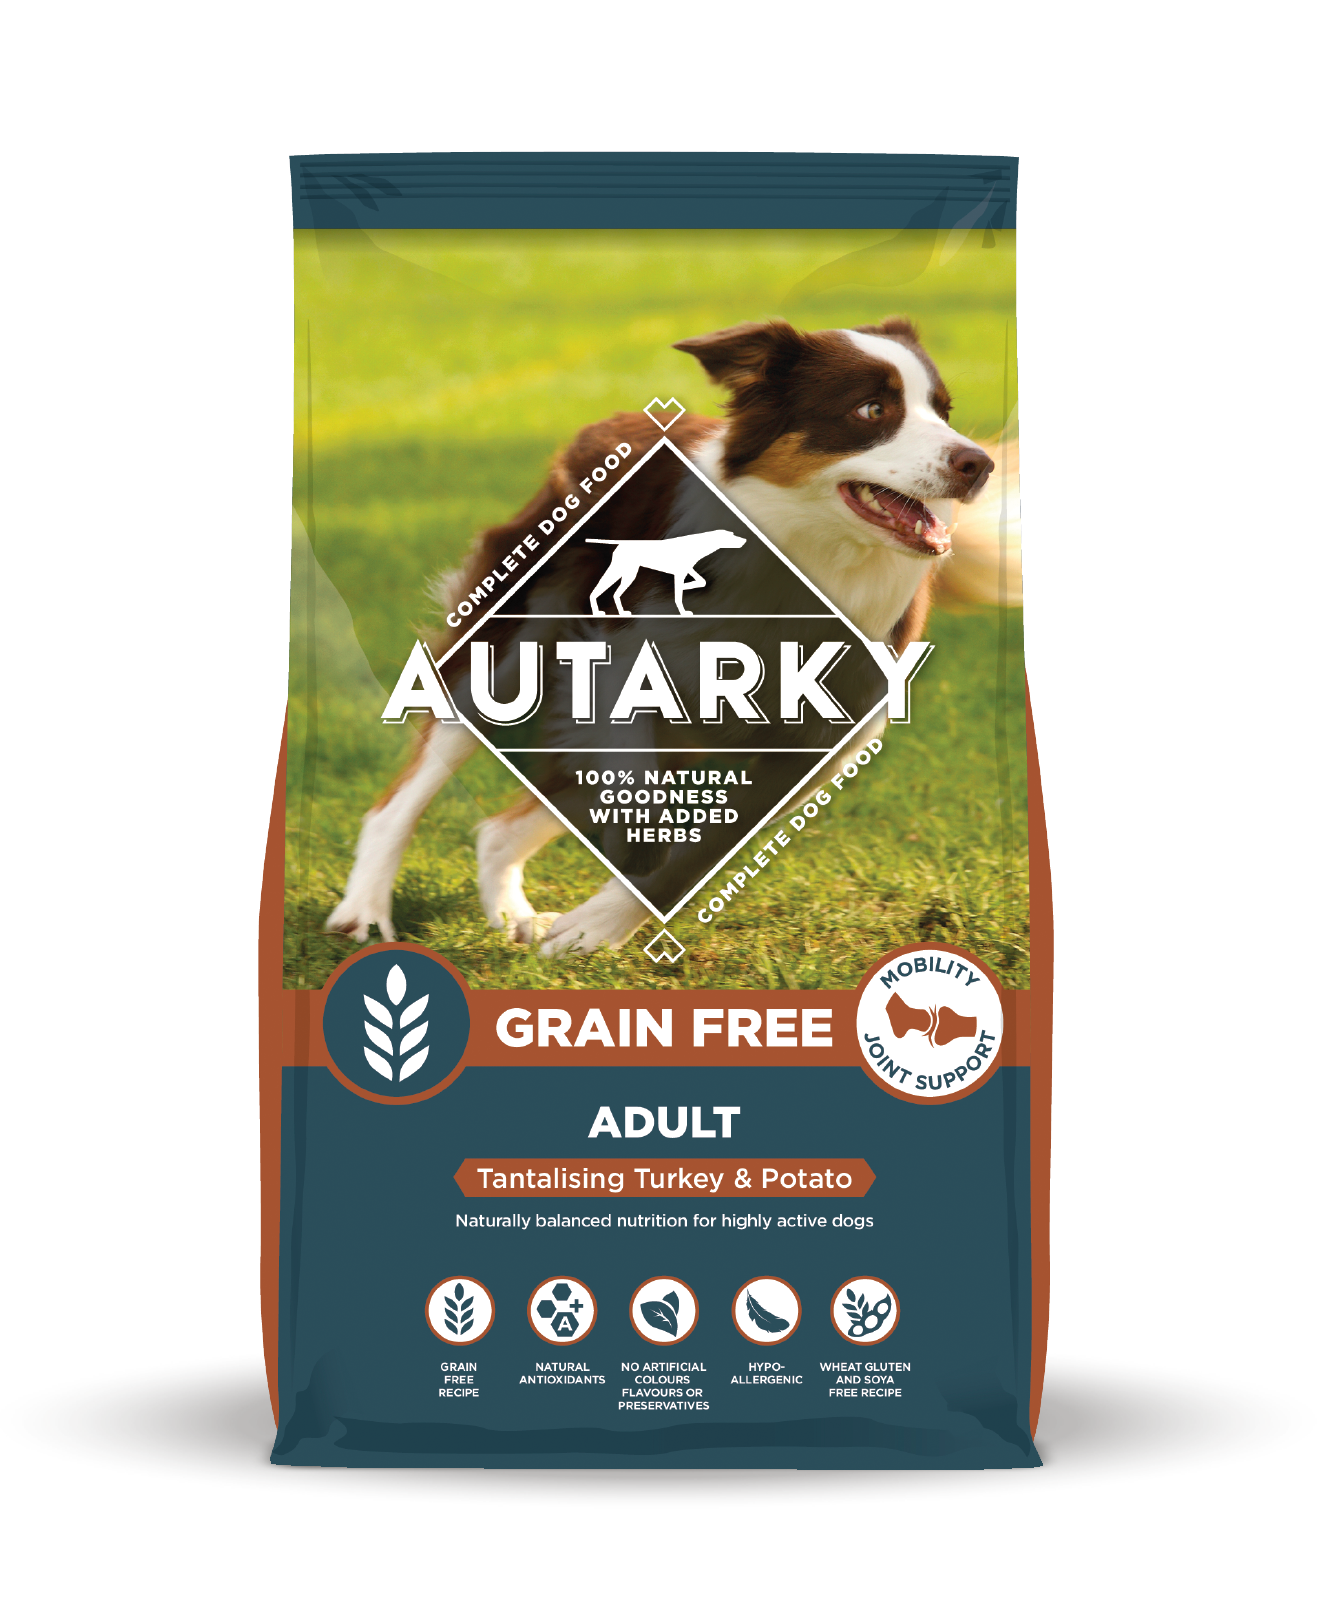 12 kilo bag of Autarky Grain Free Dog Food